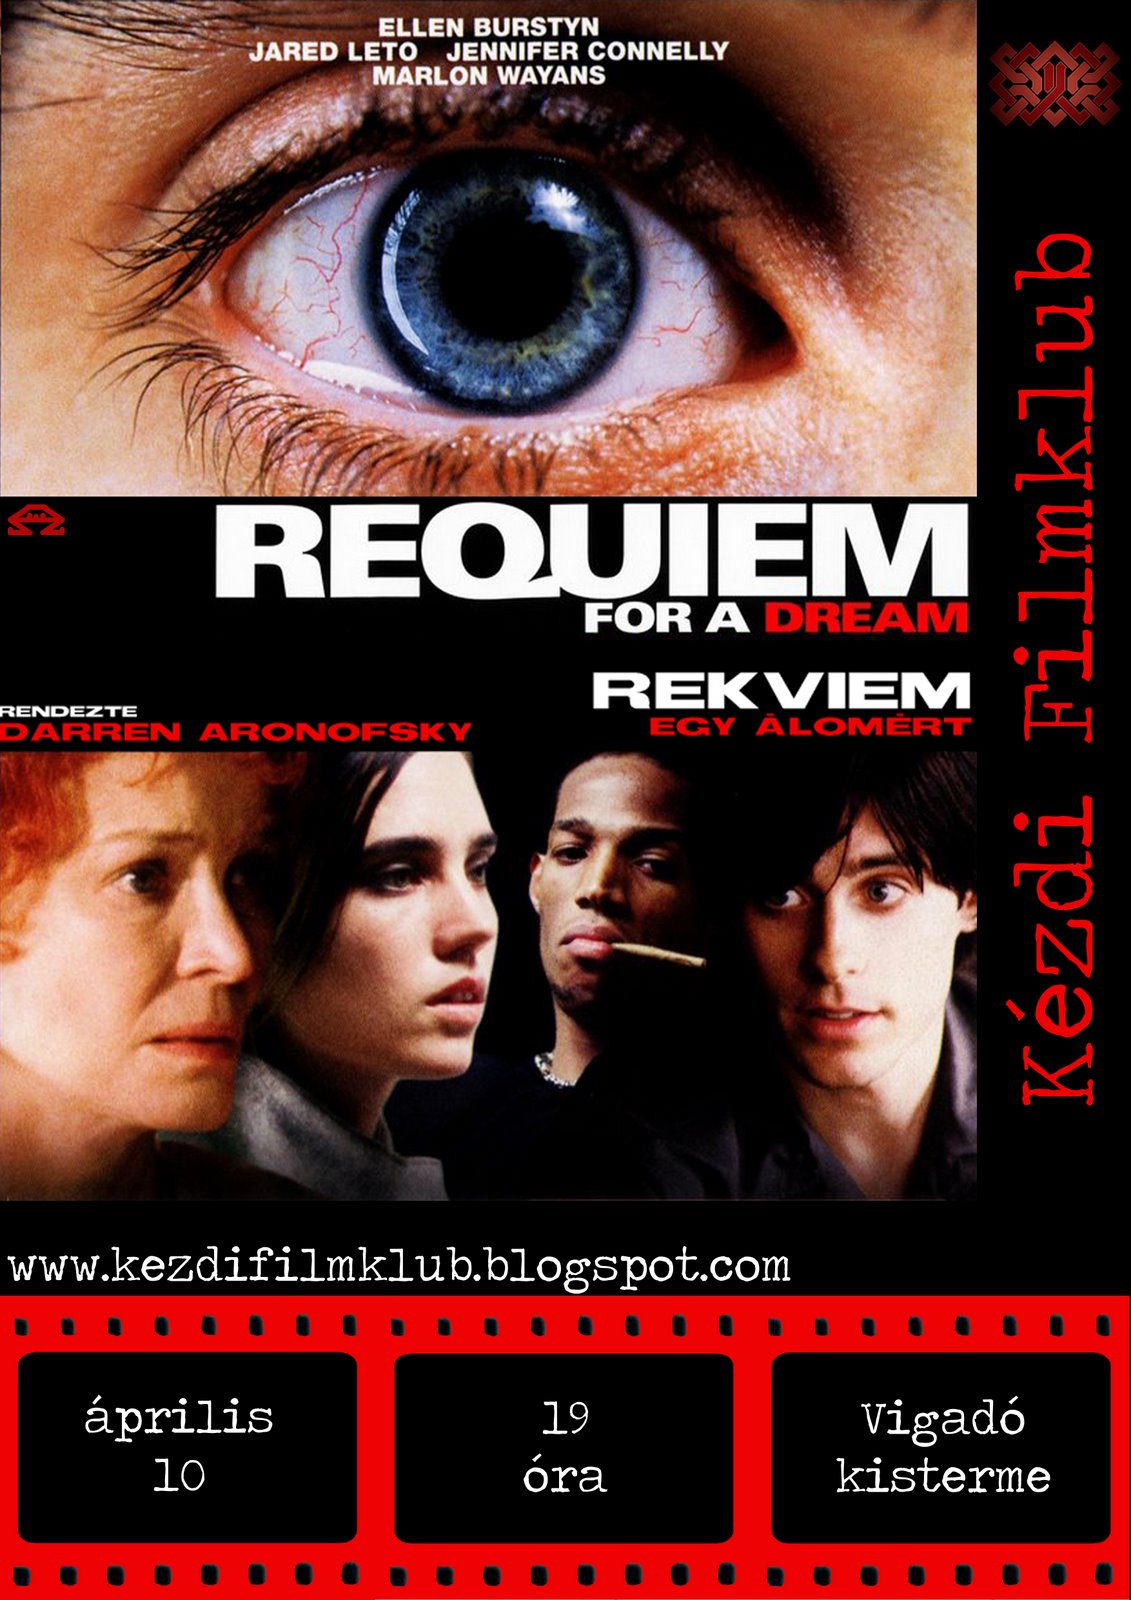 2008.04.10 - Requiem for a Dream(Rekviem egy lomrt) - Filmklub